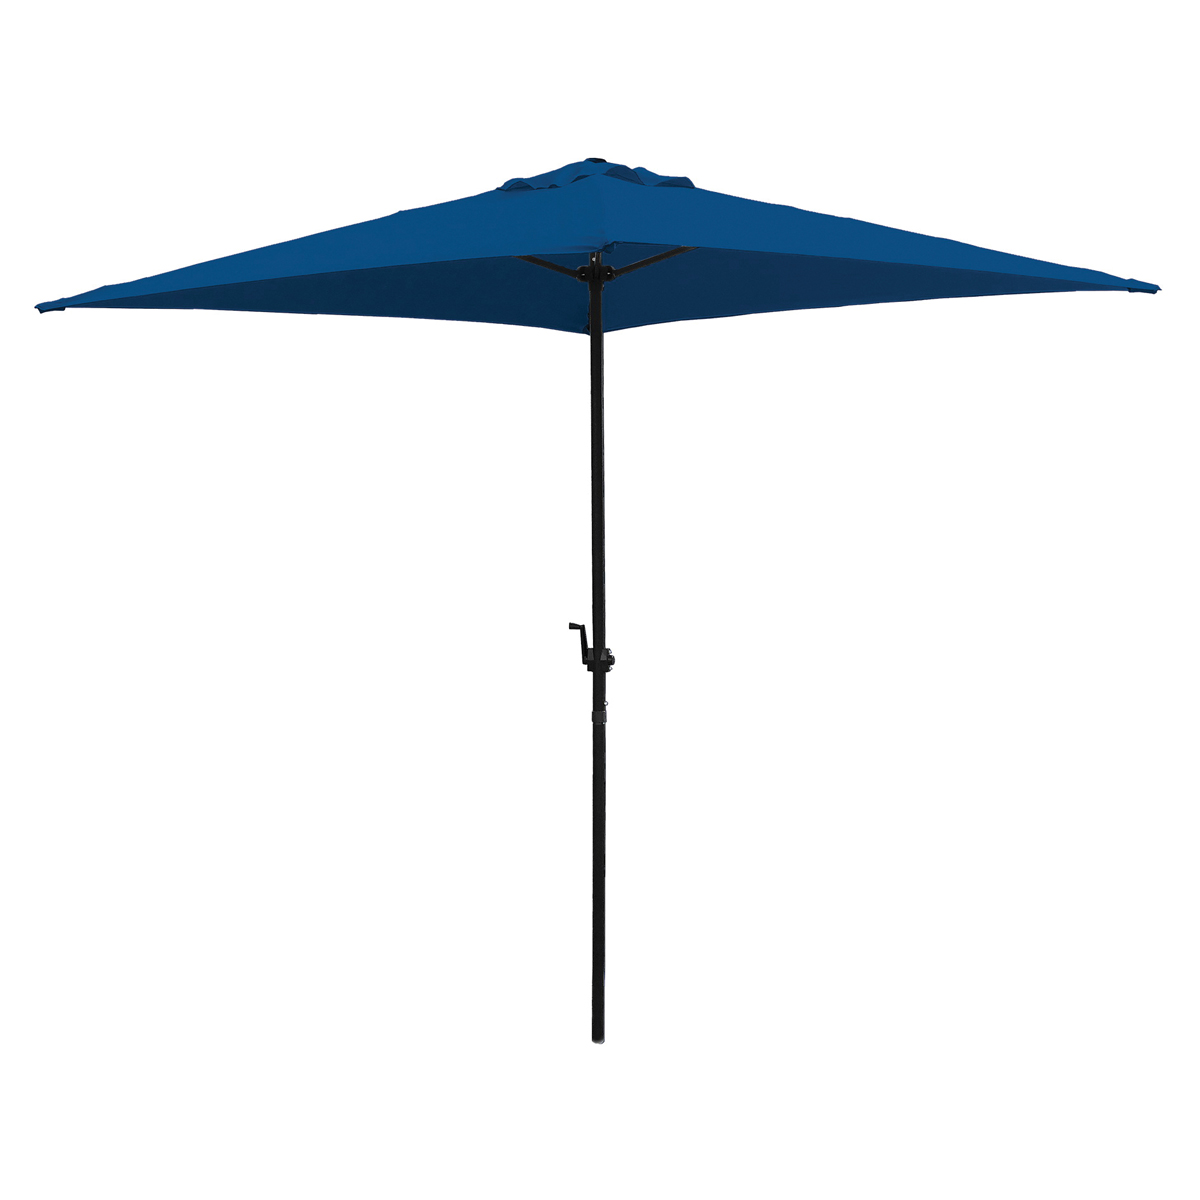 UMQ65BKOBD-34 Umbrella, 2.37m/93.3 in H, 6.5 ft W Canopy, 6.5 ft L Canopy, Square Canopy